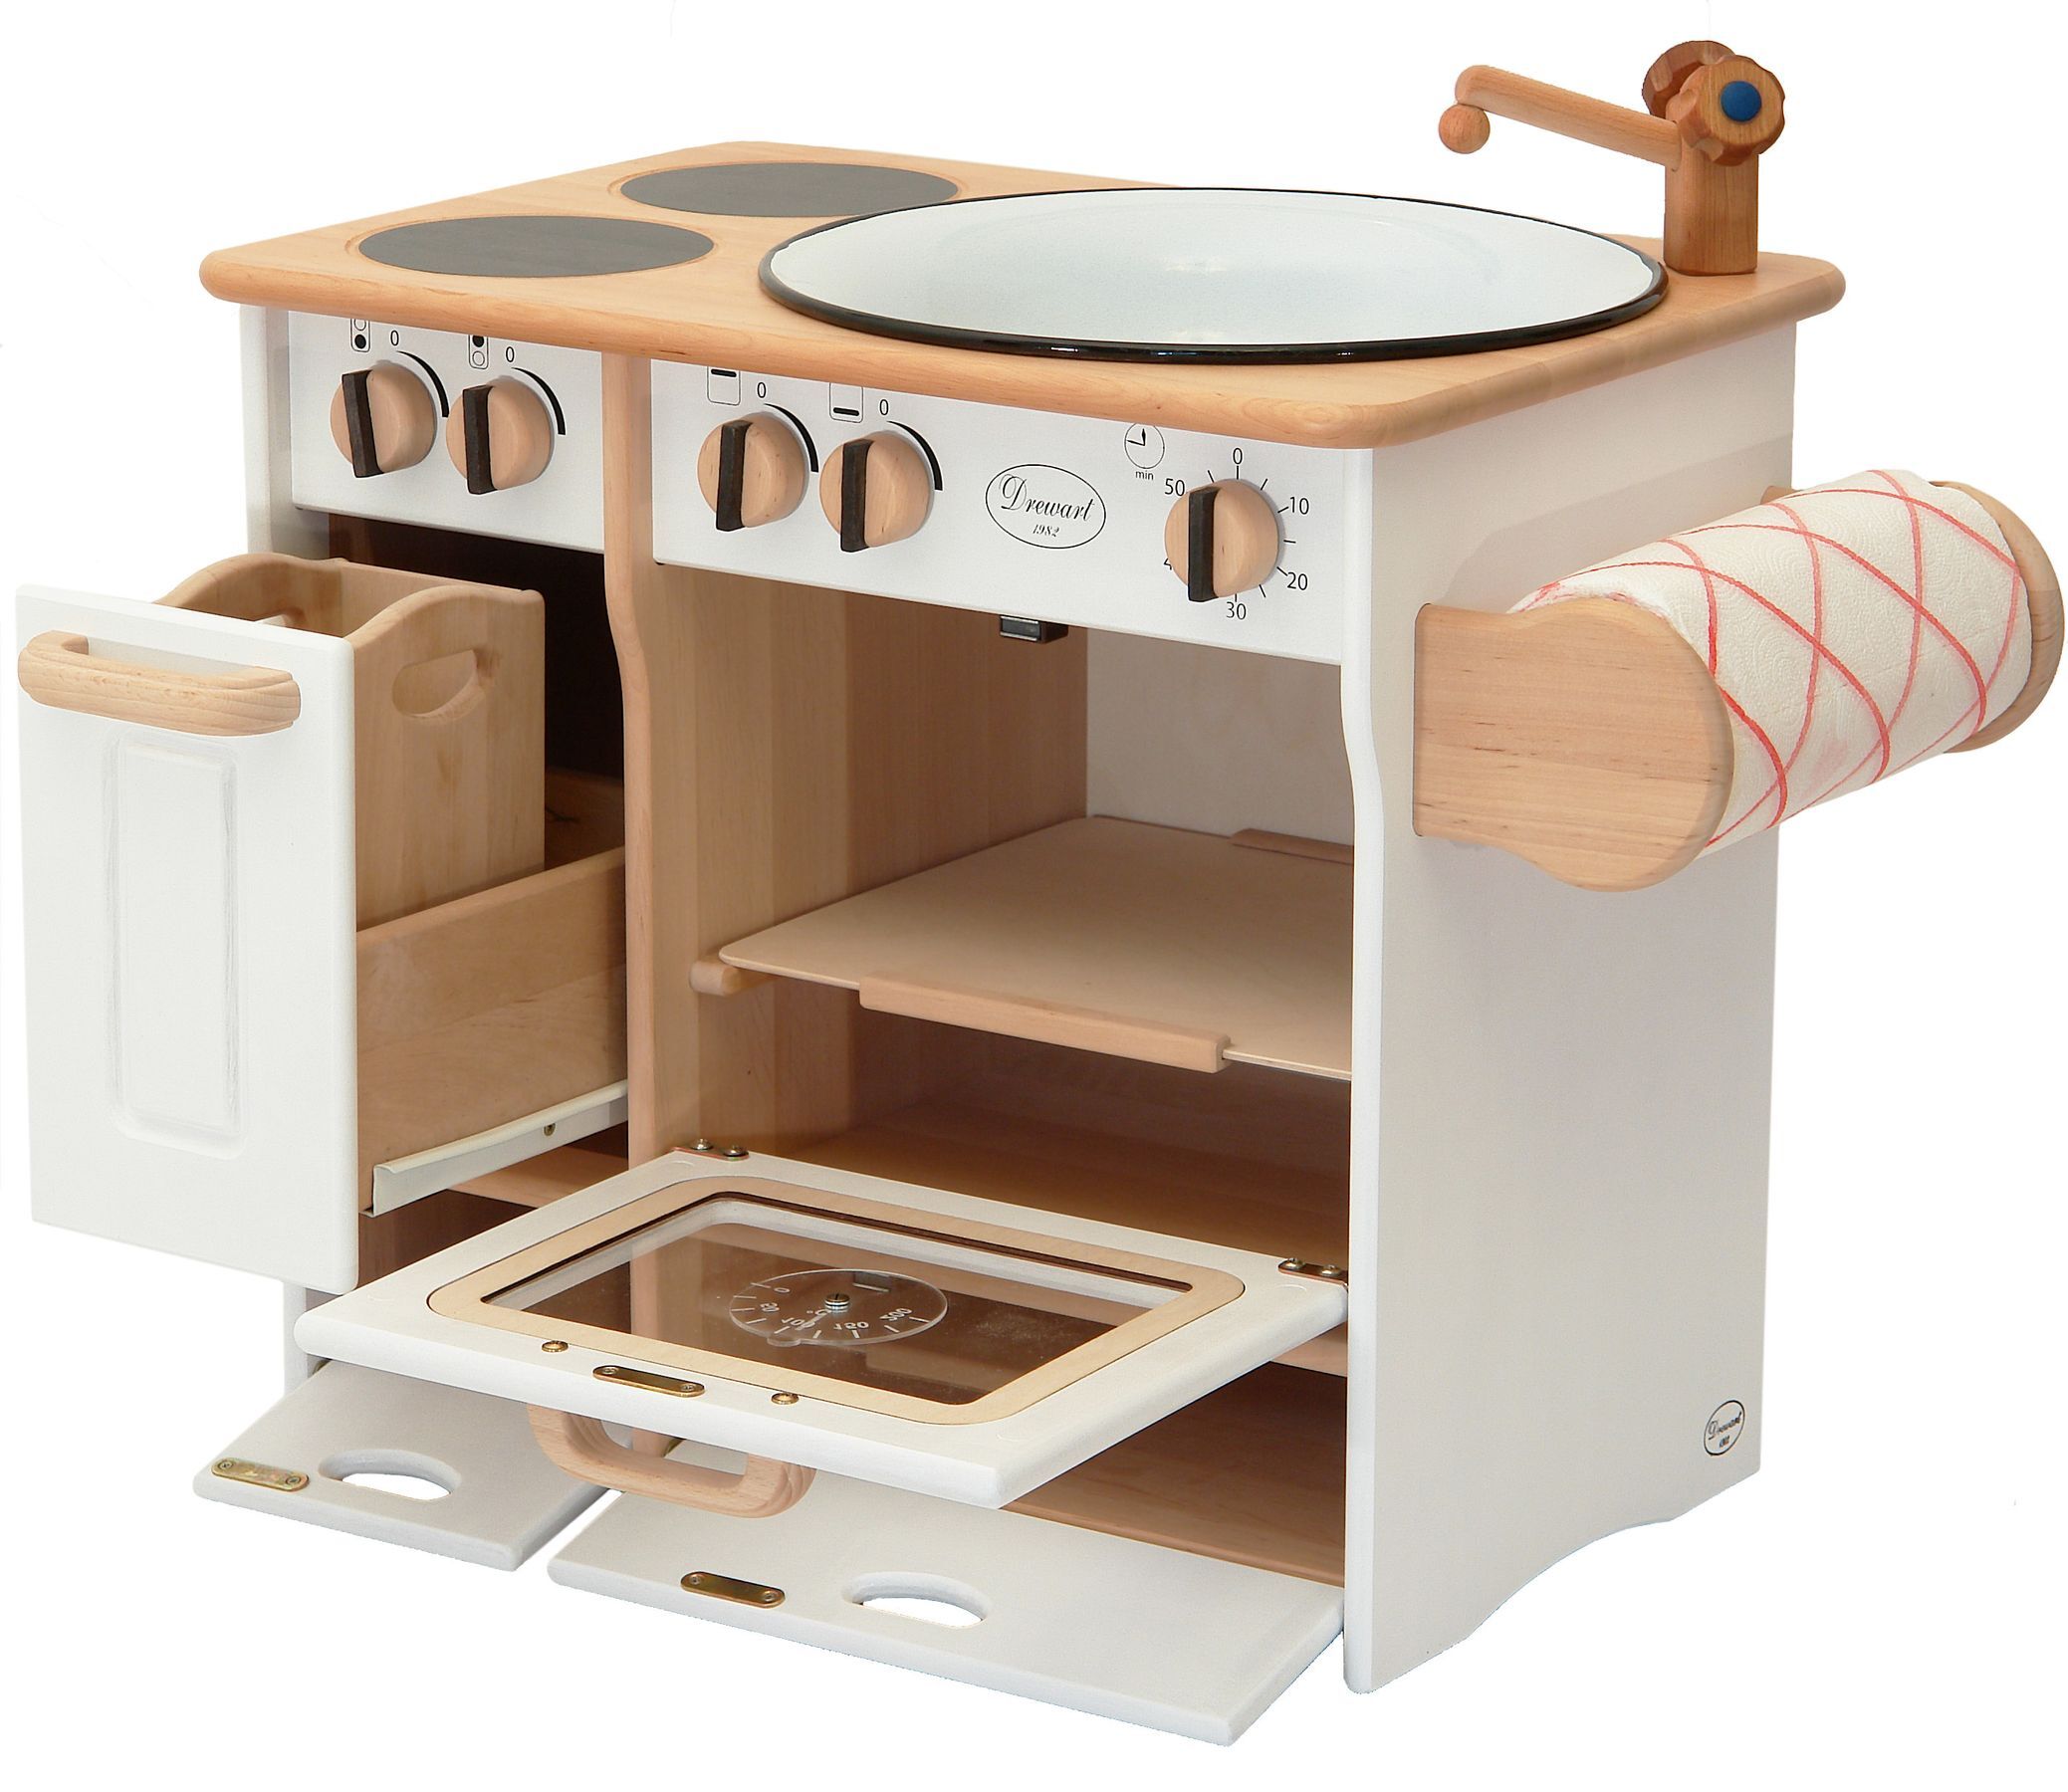 Drewart Kinderküche mit Zubehör Spielküche Massivholz weiß 932-2044 DL 